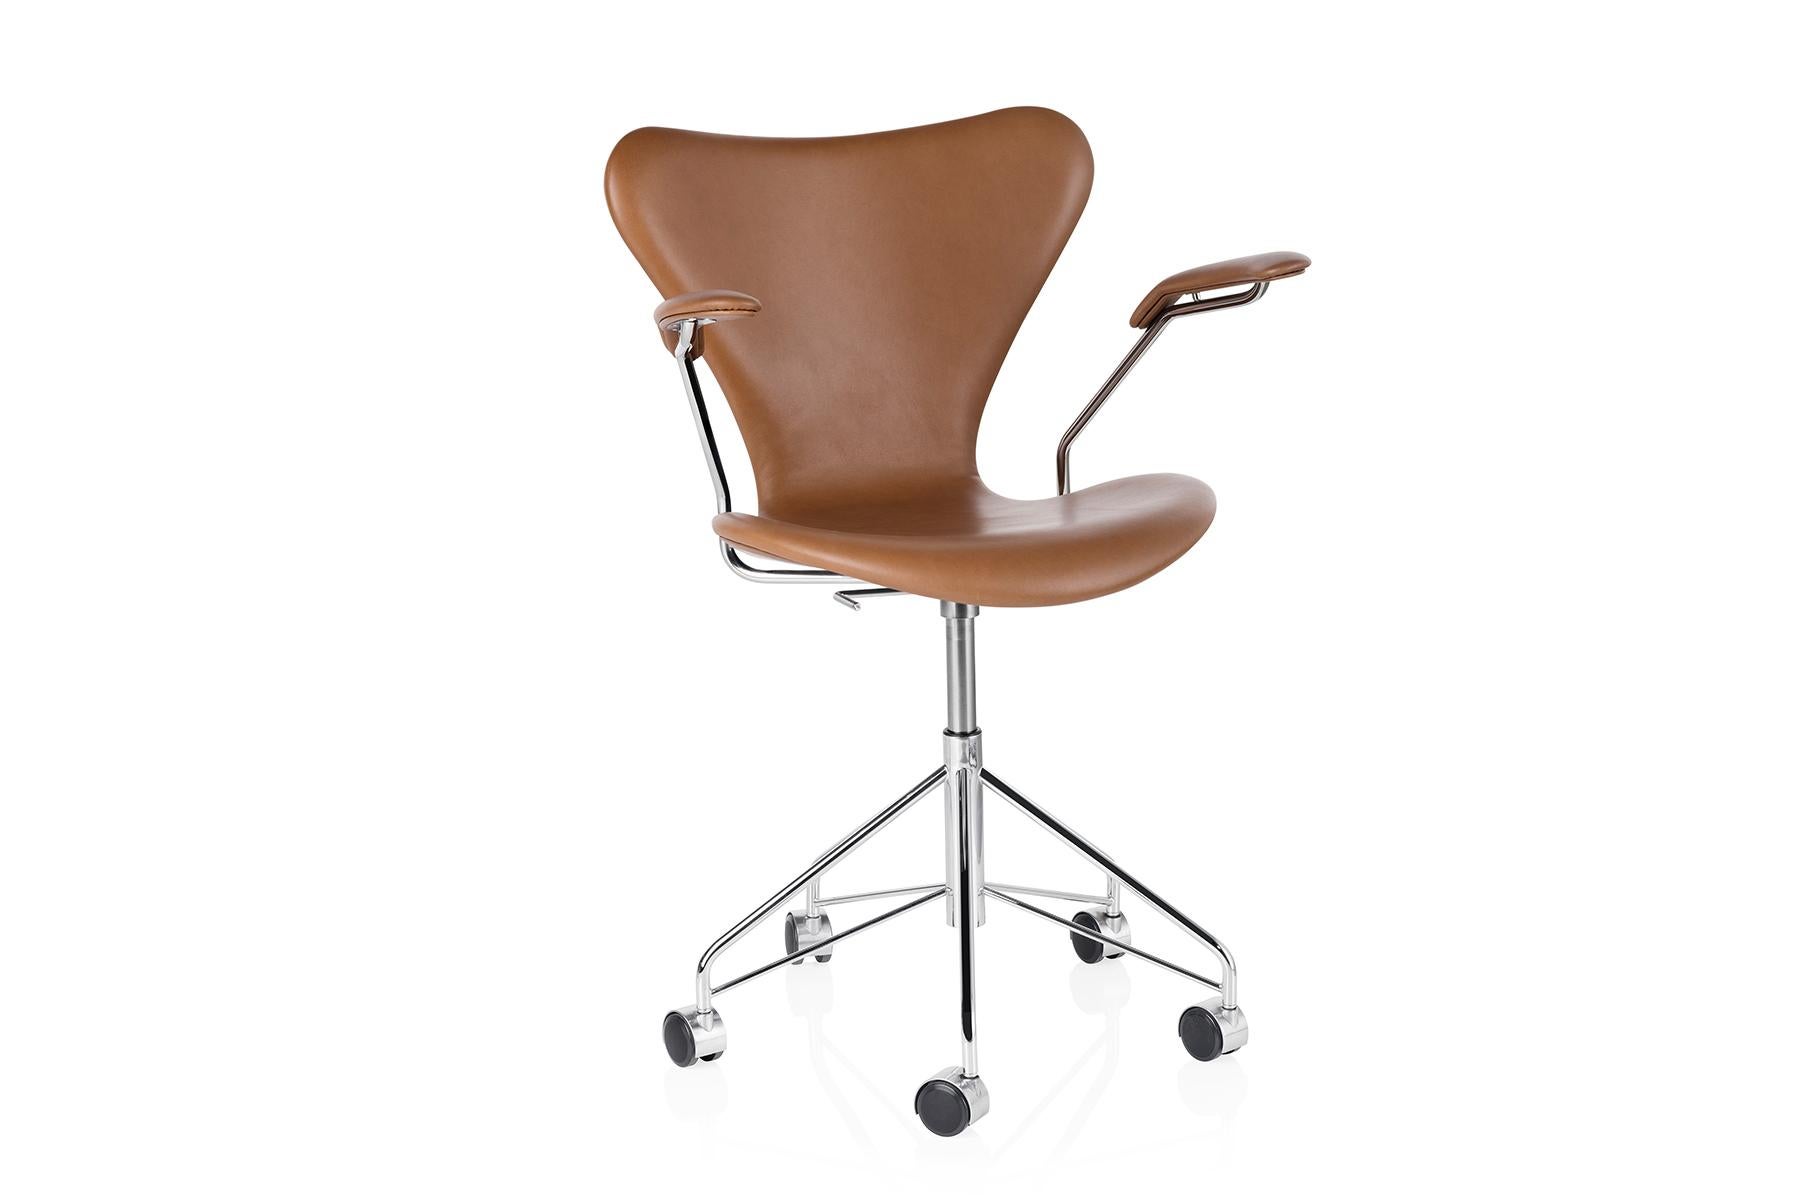 Entdecken Sie den kultigen Stuhl der Serie 7 mit funktionellem Drehfuß und voll gepolstert für ein schönes und komfortables Ergebnis. Der vierbeinige, stapelbare Stuhl stellt die Krönung der Laminiertechnik dar. Der Visionär Arne Jacobsen nutzte die